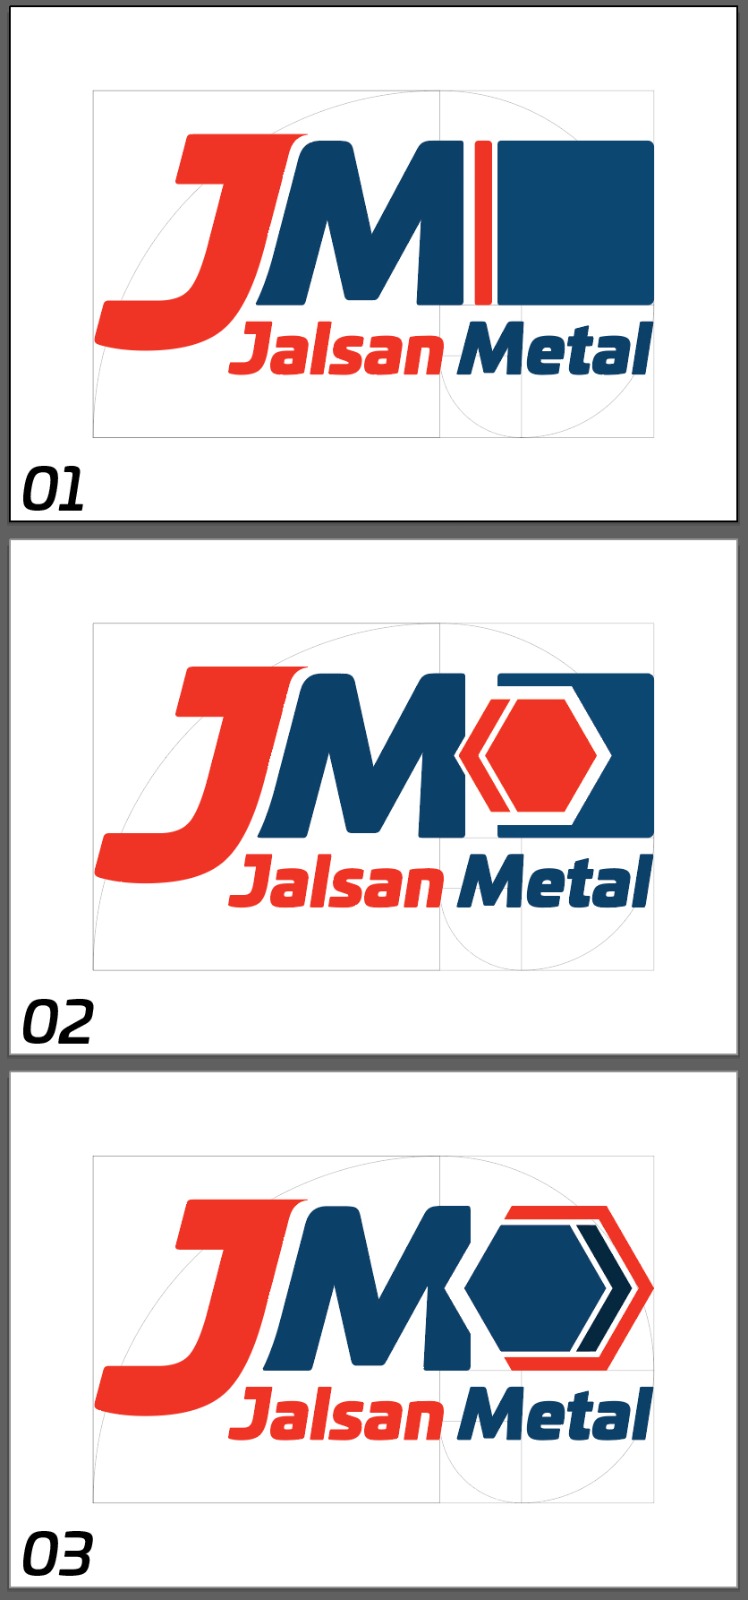 Jalsan Metal Son Logo Seçenekleri